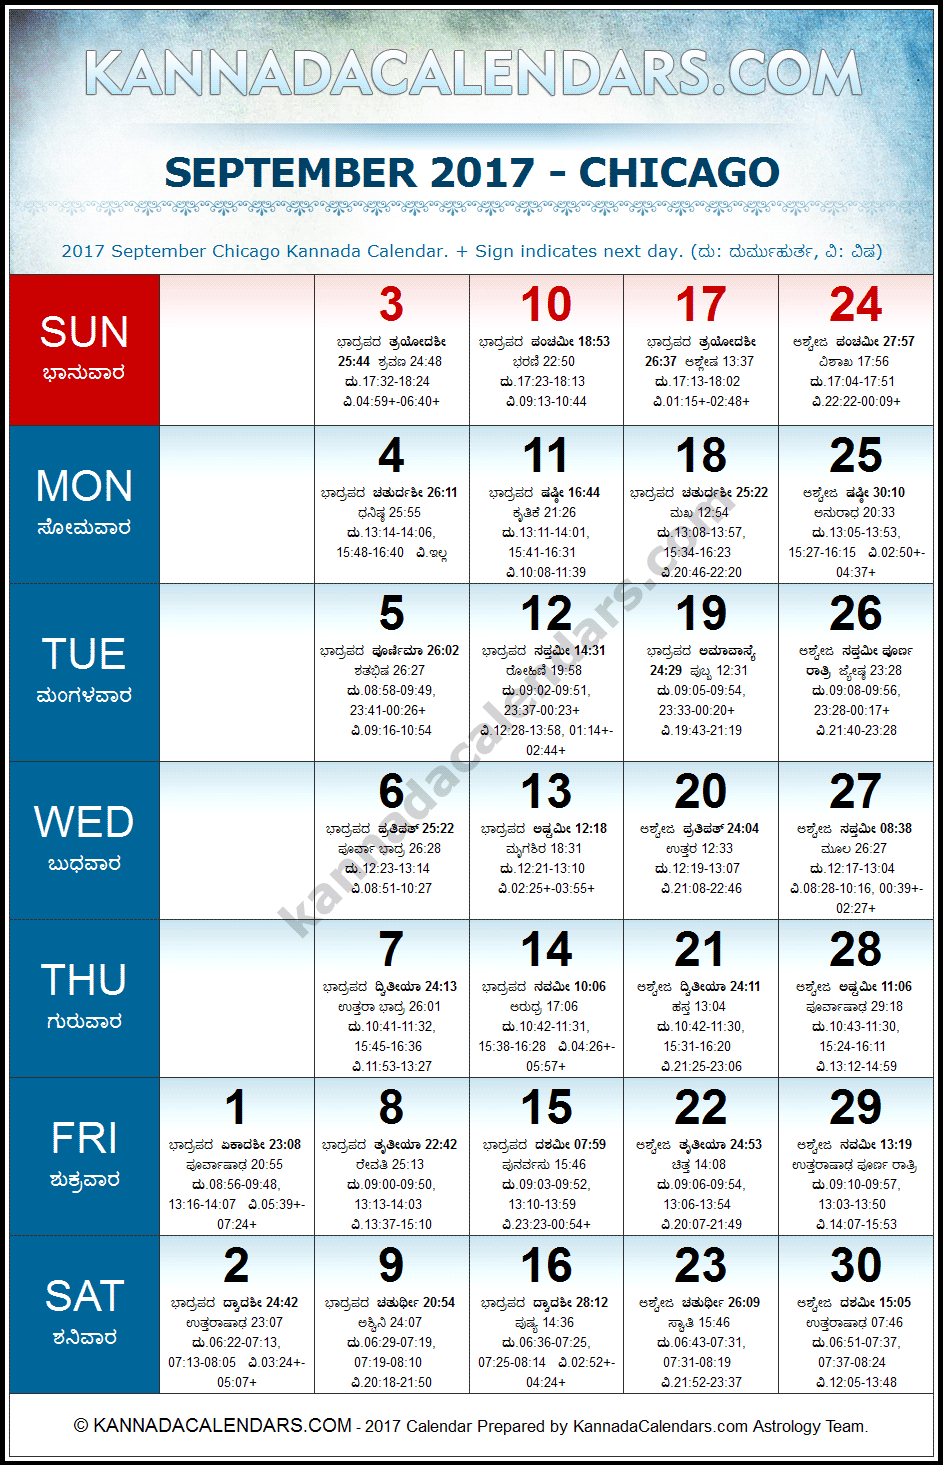 September 2017 Kannada Calendar for Chicago, USA